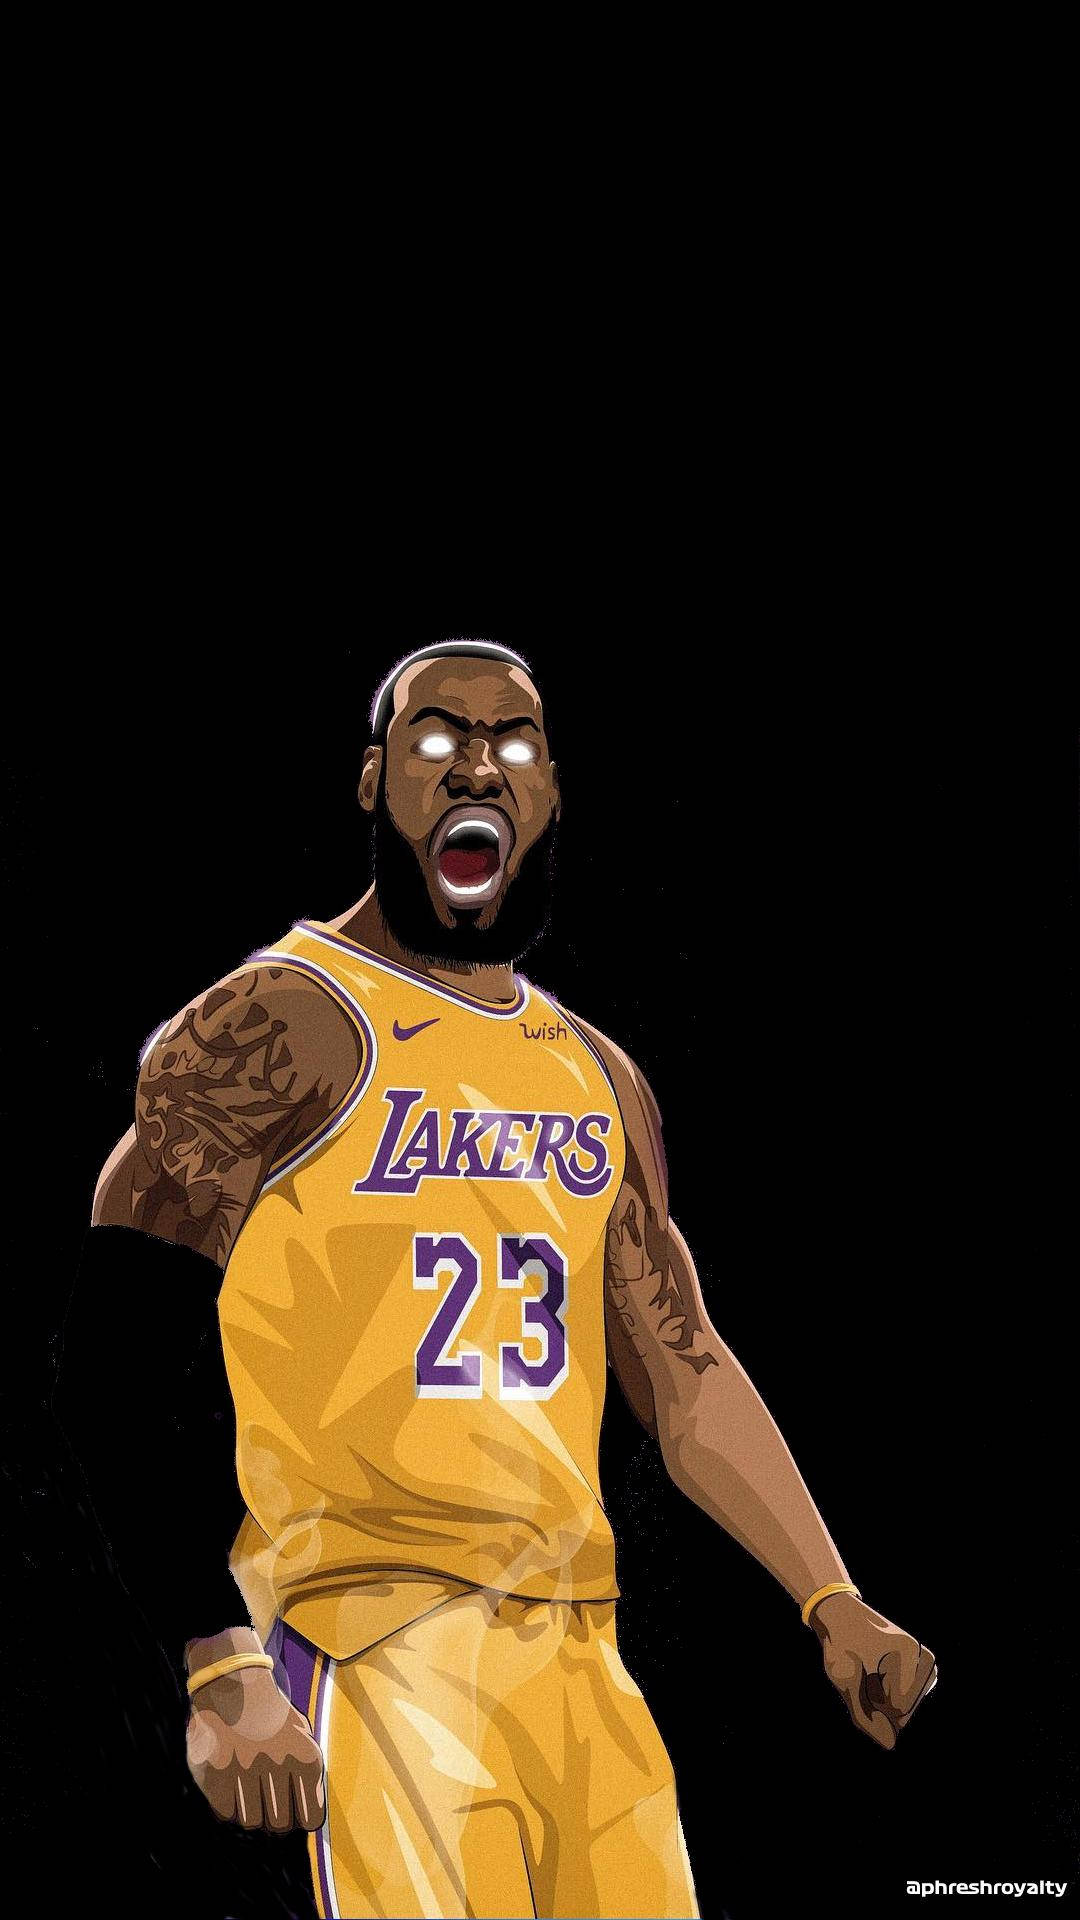 Entfesselnsie Ihren Lakers-geist Mit Diesem Einzigartigen Iphone-design Wallpaper